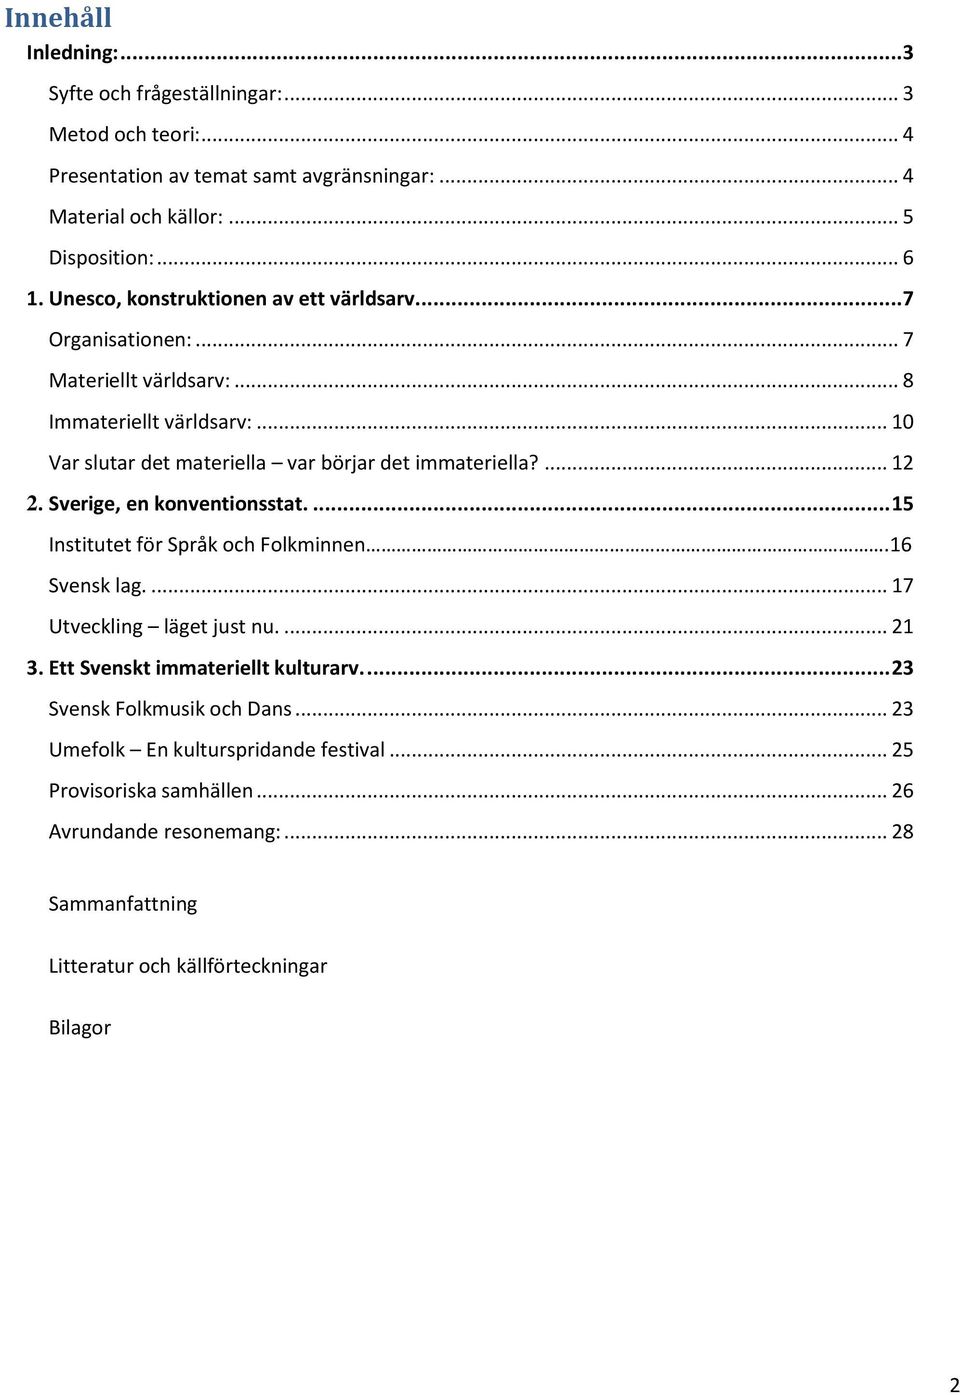 ... 12 2. Sverige, en konventionsstat.... 15 Institutet för Språk och Folkminnen.16 Svensk lag.... 17 Utveckling läget just nu.... 21 3. Ett Svenskt immateriellt kulturarv.